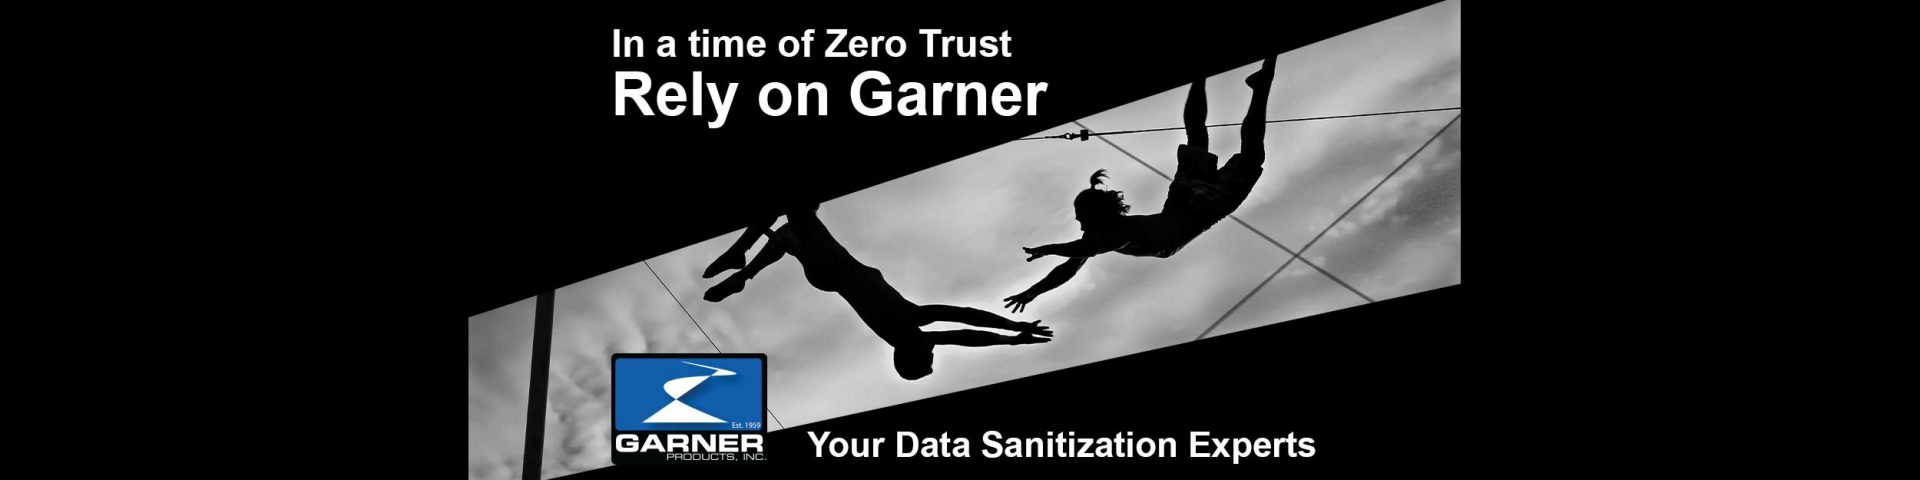 rely-on-garner-zero-trust-3-1920x480